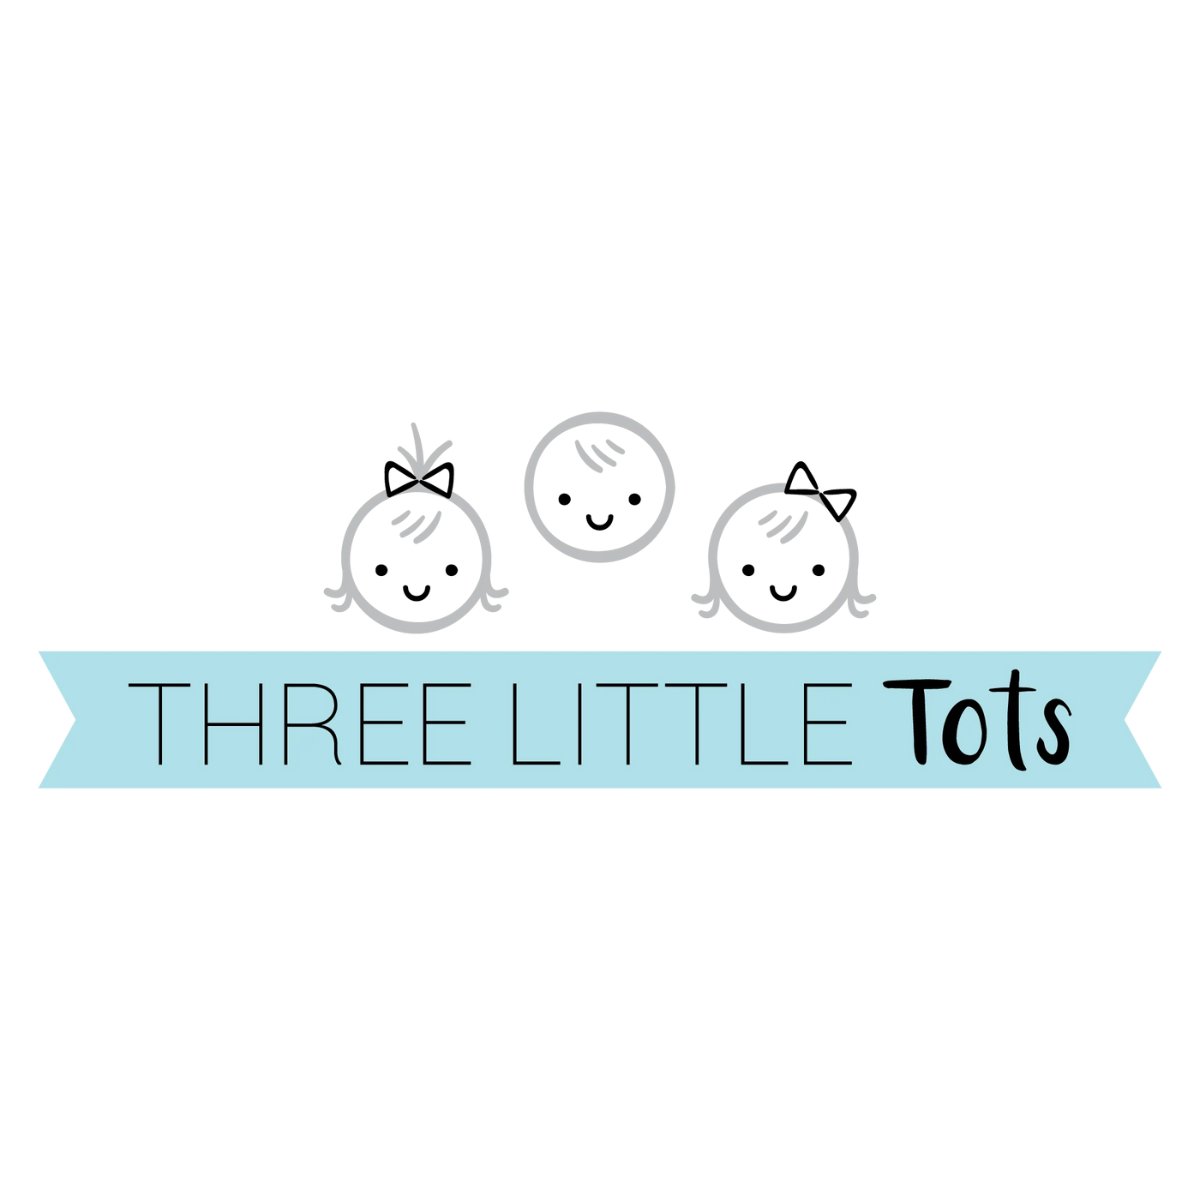 Three Little Tots